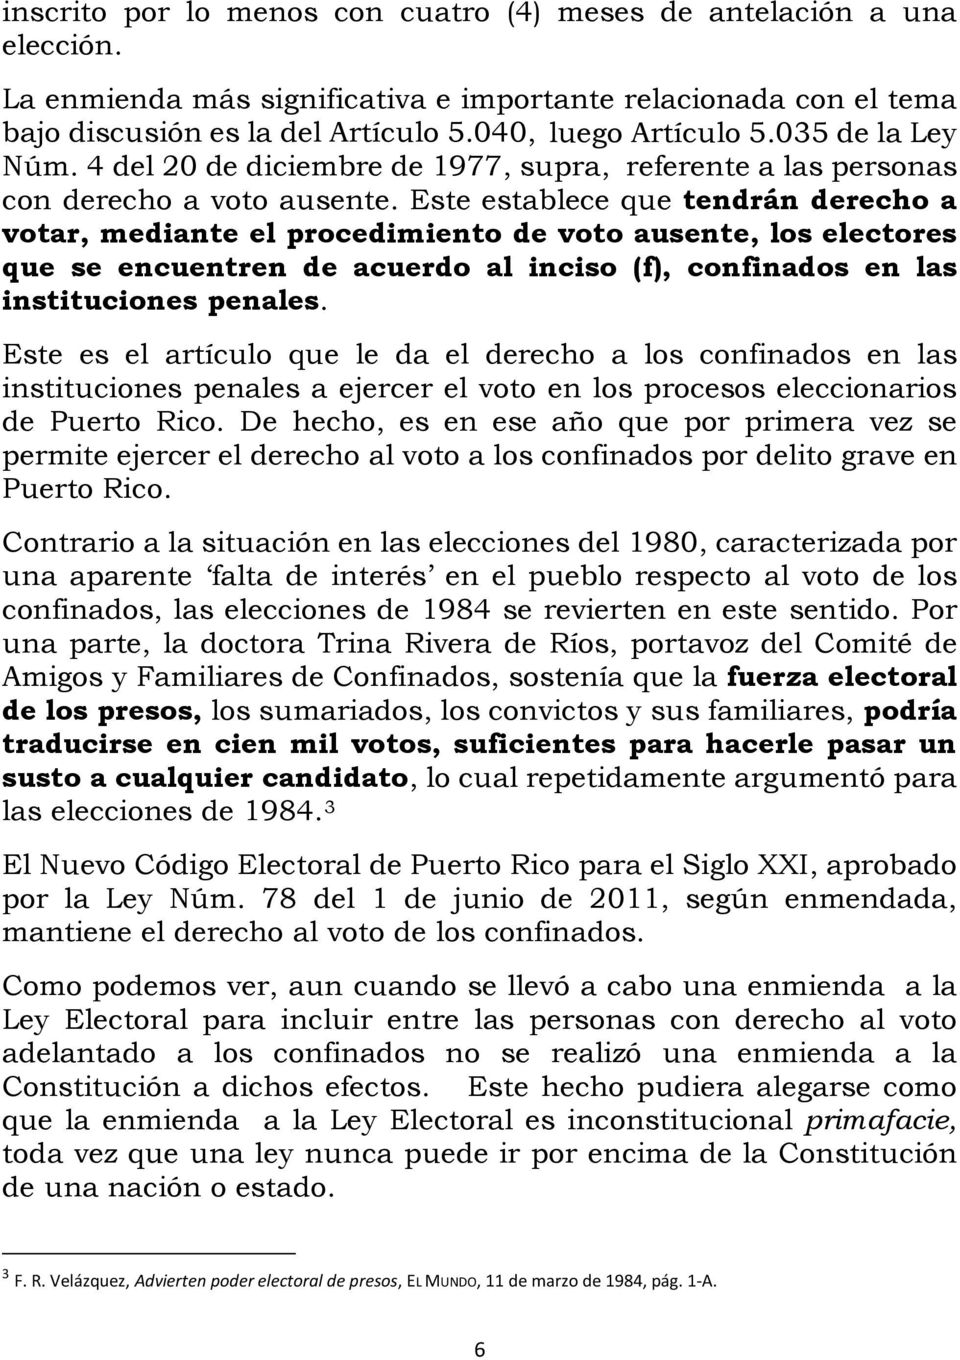 Este establece que tendrán derecho a votar, mediante el procedimiento de voto ausente, los electores que se encuentren de acuerdo al inciso (f), confinados en las instituciones penales.